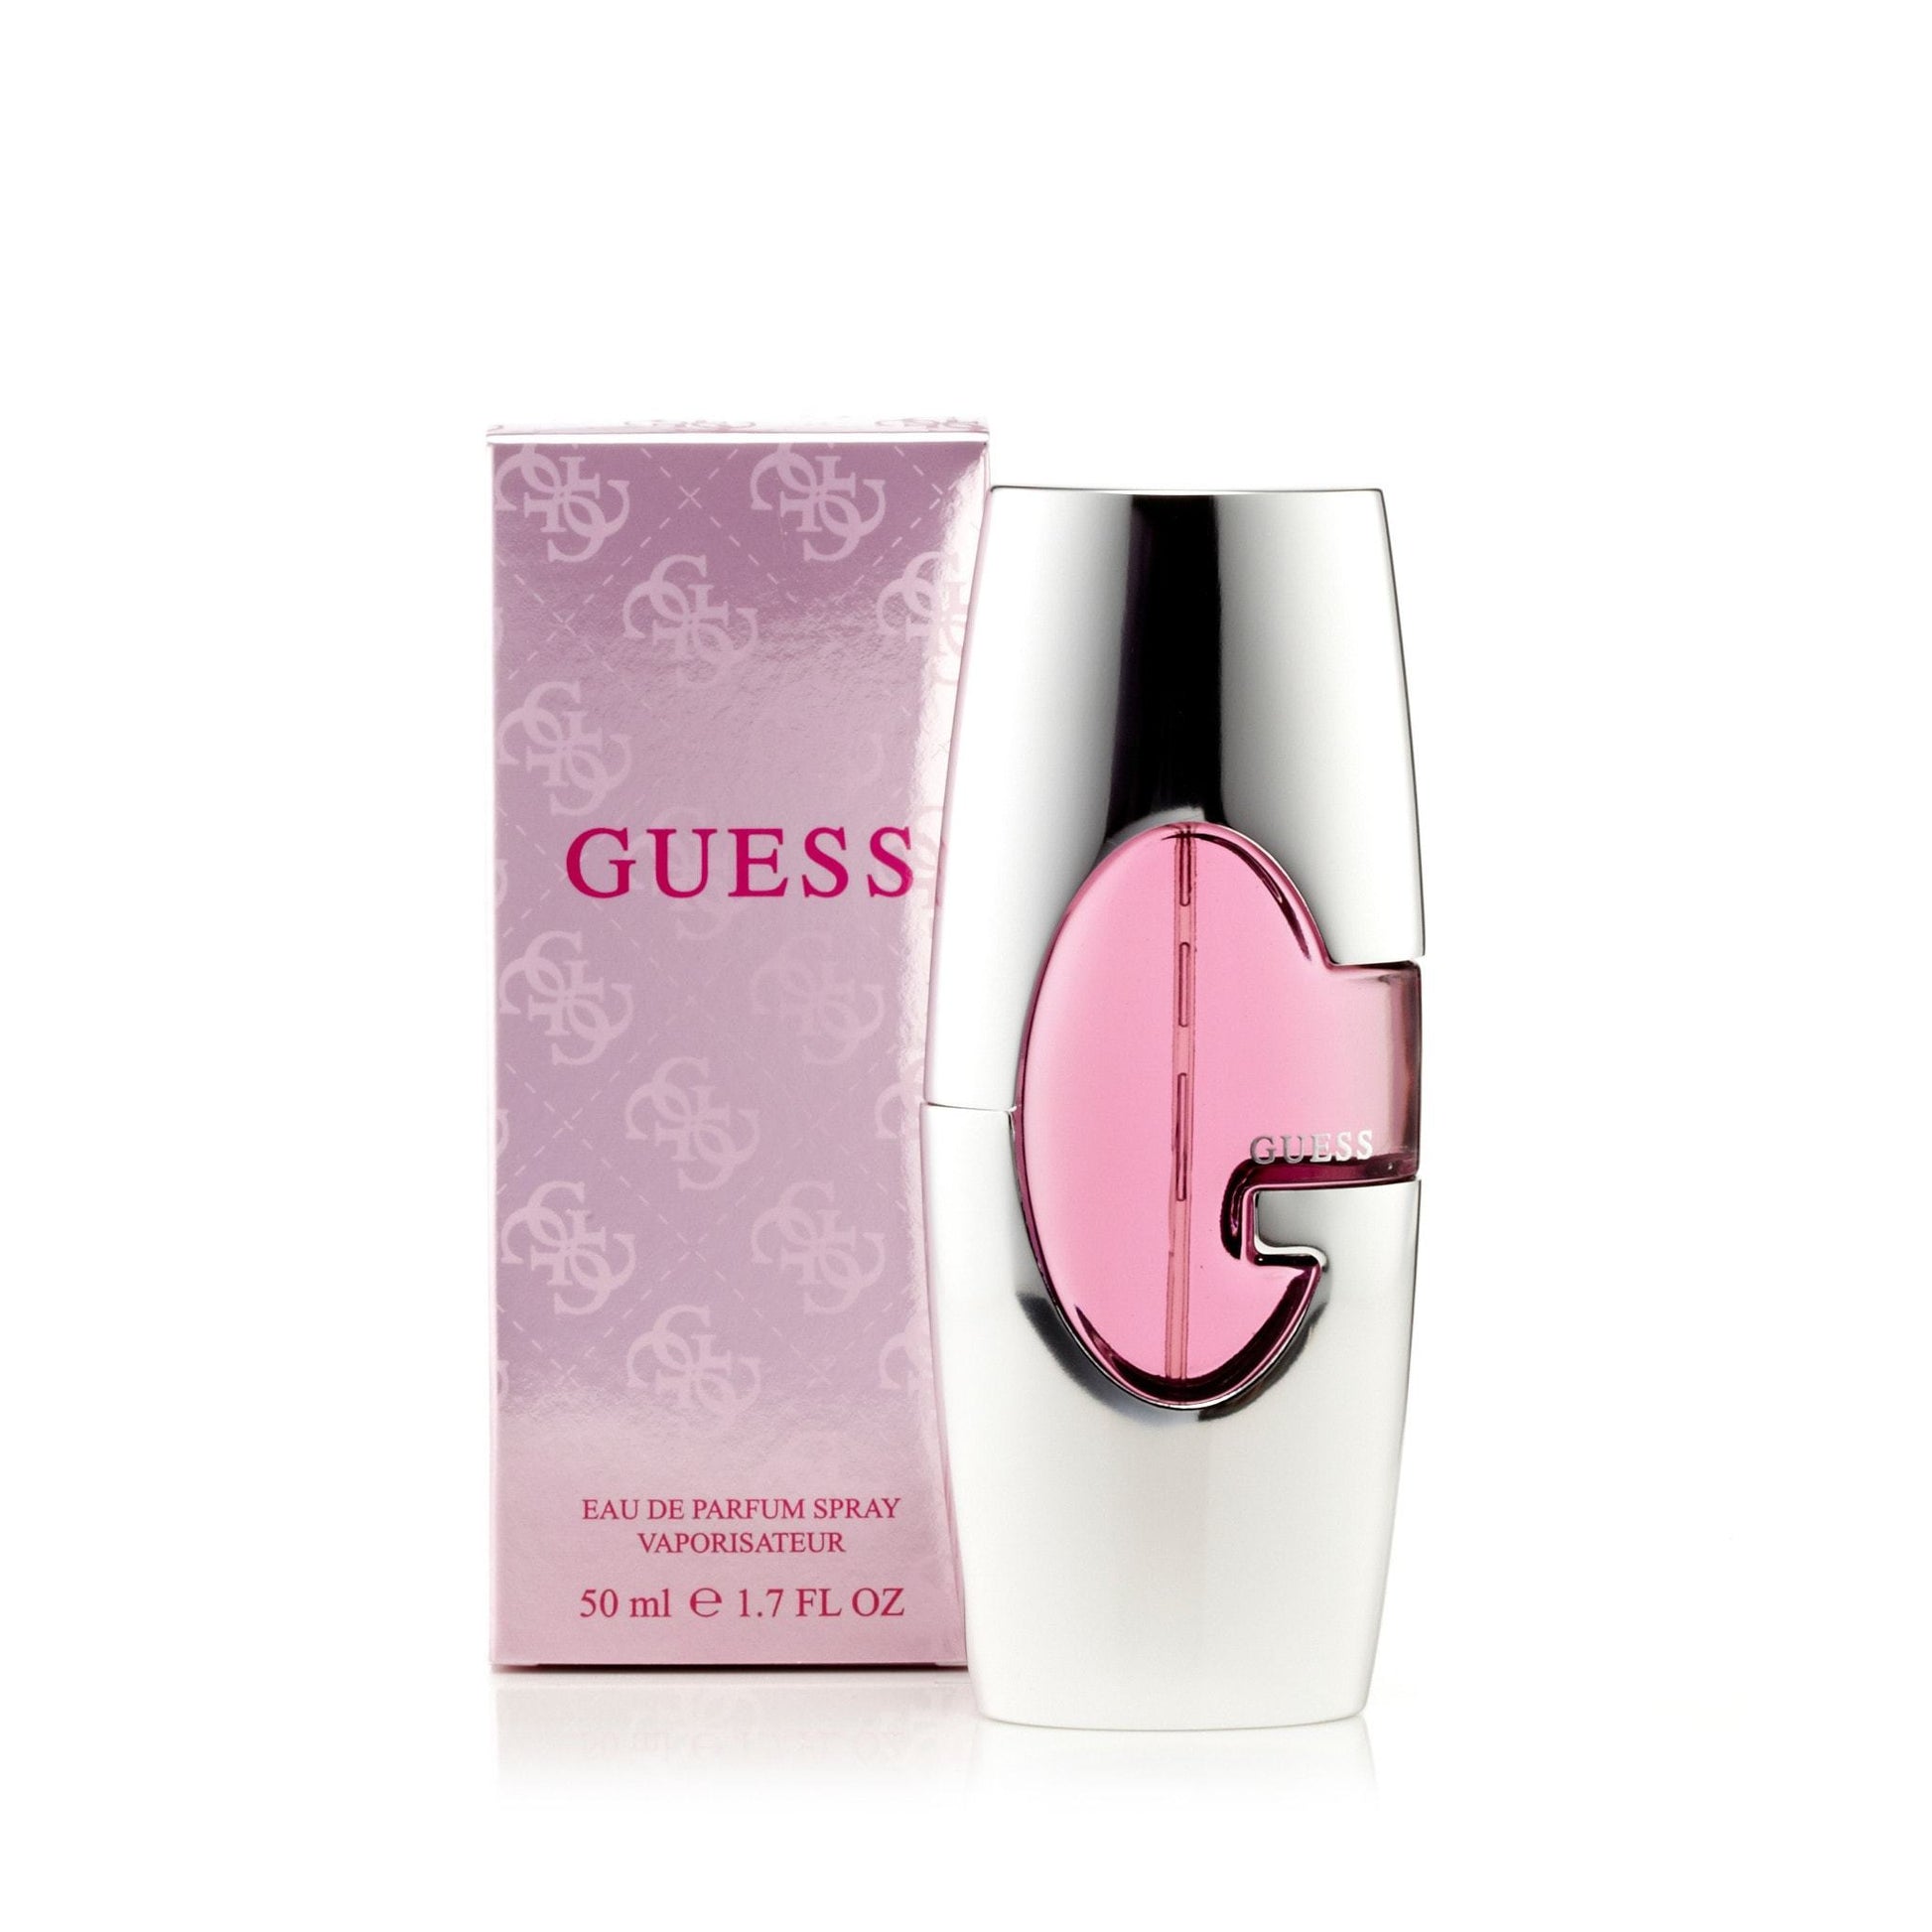 Guess Eau de Parfum Spray for Women by Guess, Product image 3